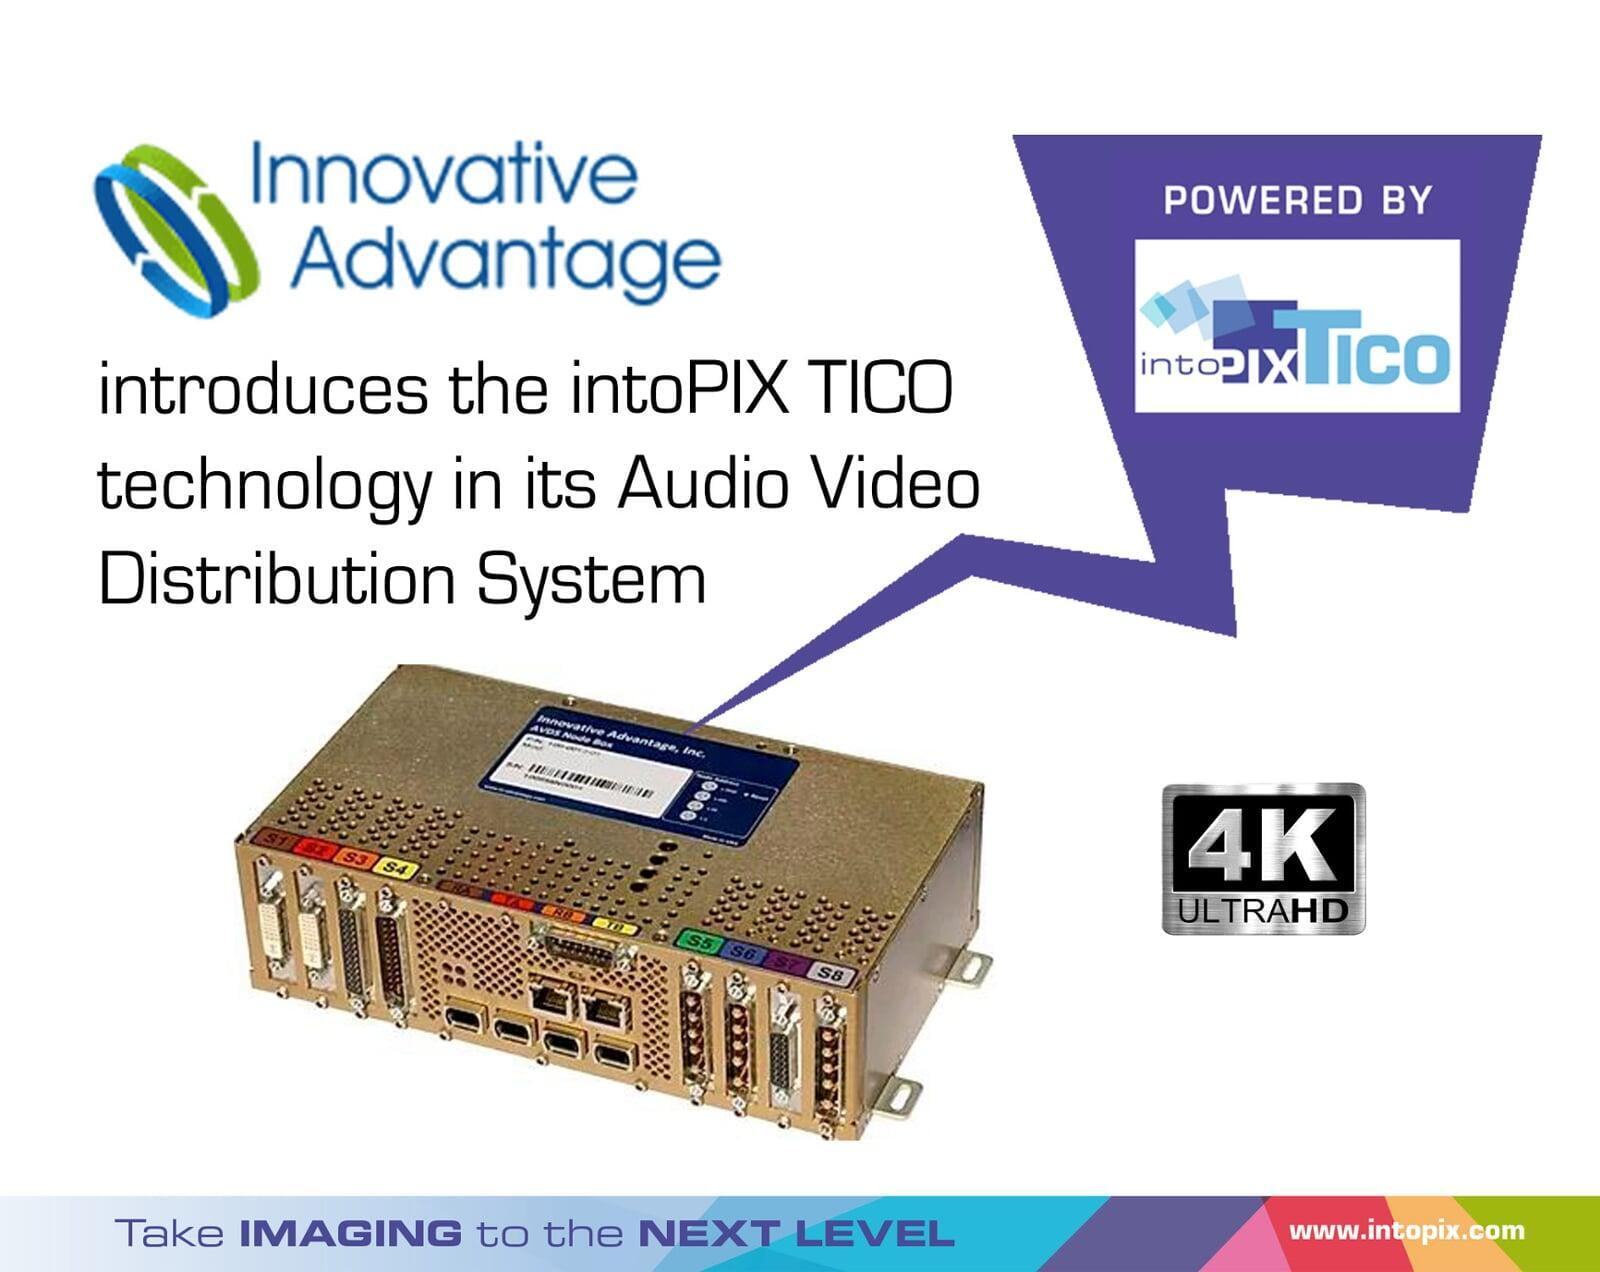 Innovative Advantage met à niveau les flux de la HD à la 4K dans les jets d'affaires avec la technologie TICO RDD35 d'intoPIX 